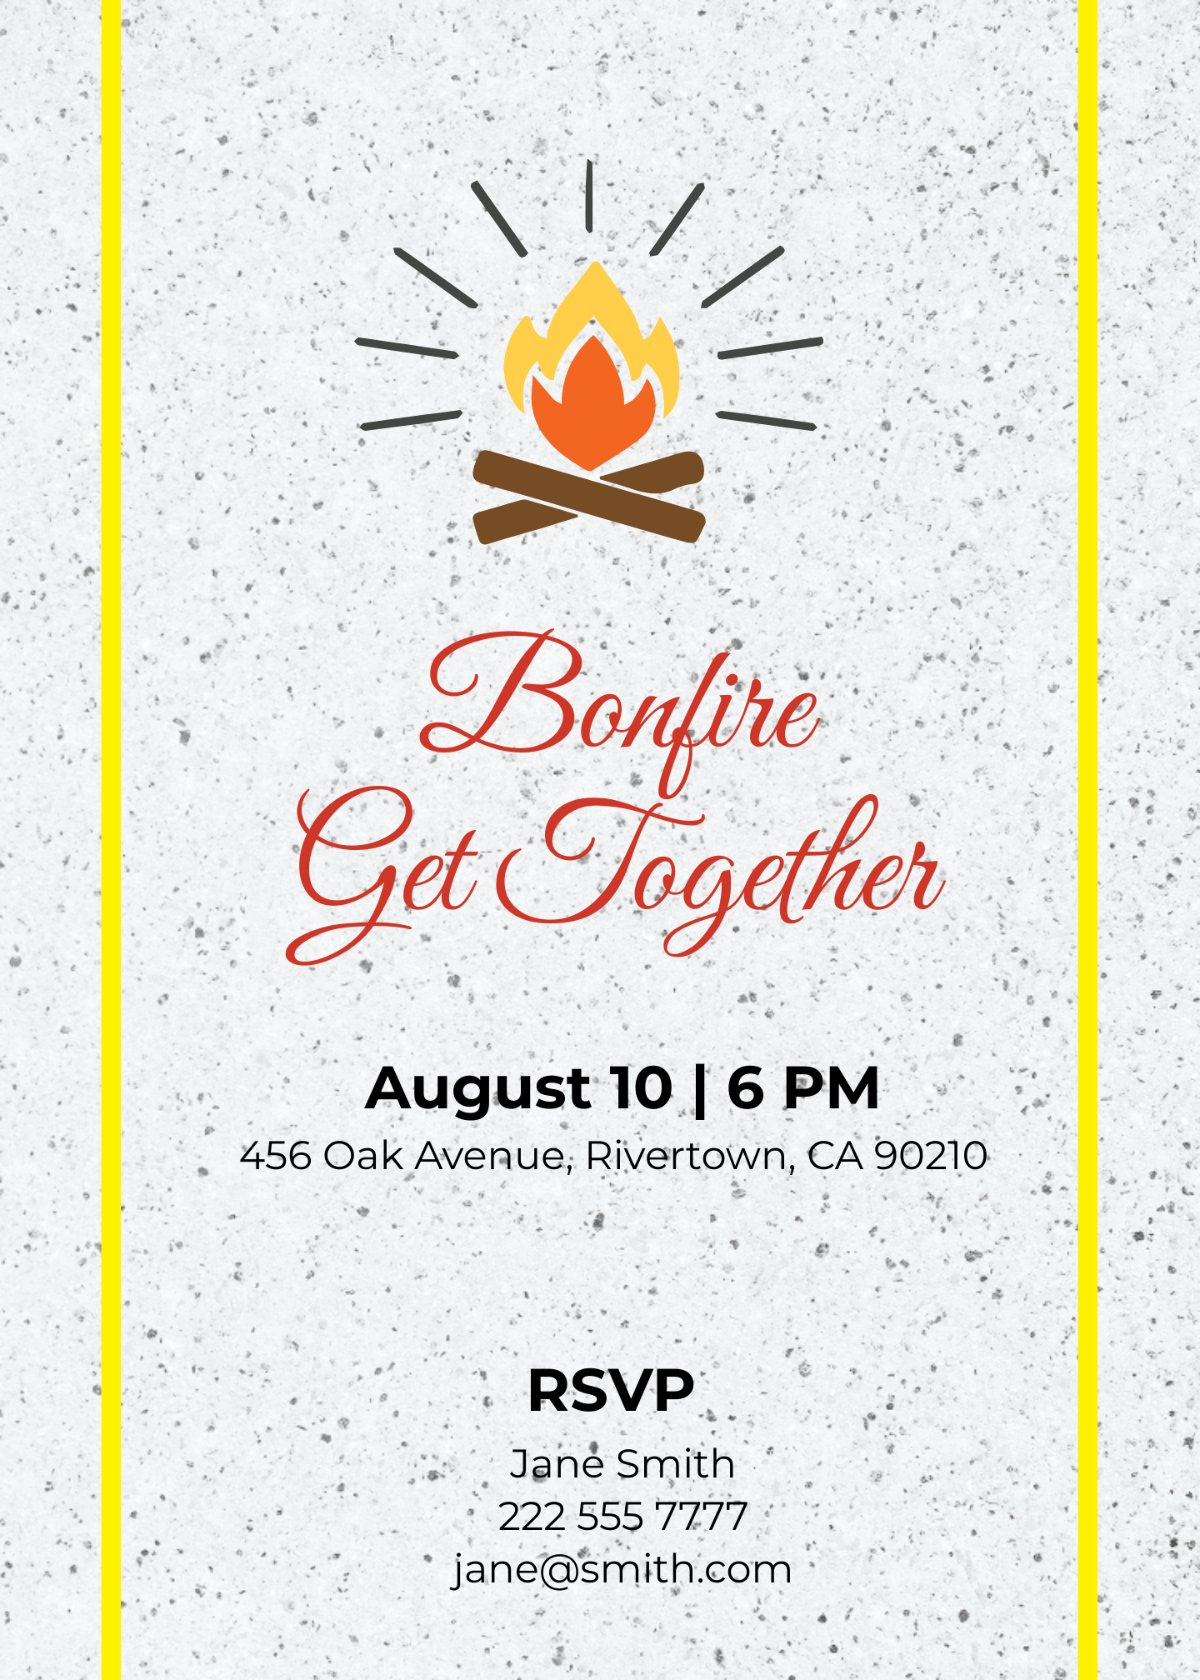 Bonfire Get Together Invitation